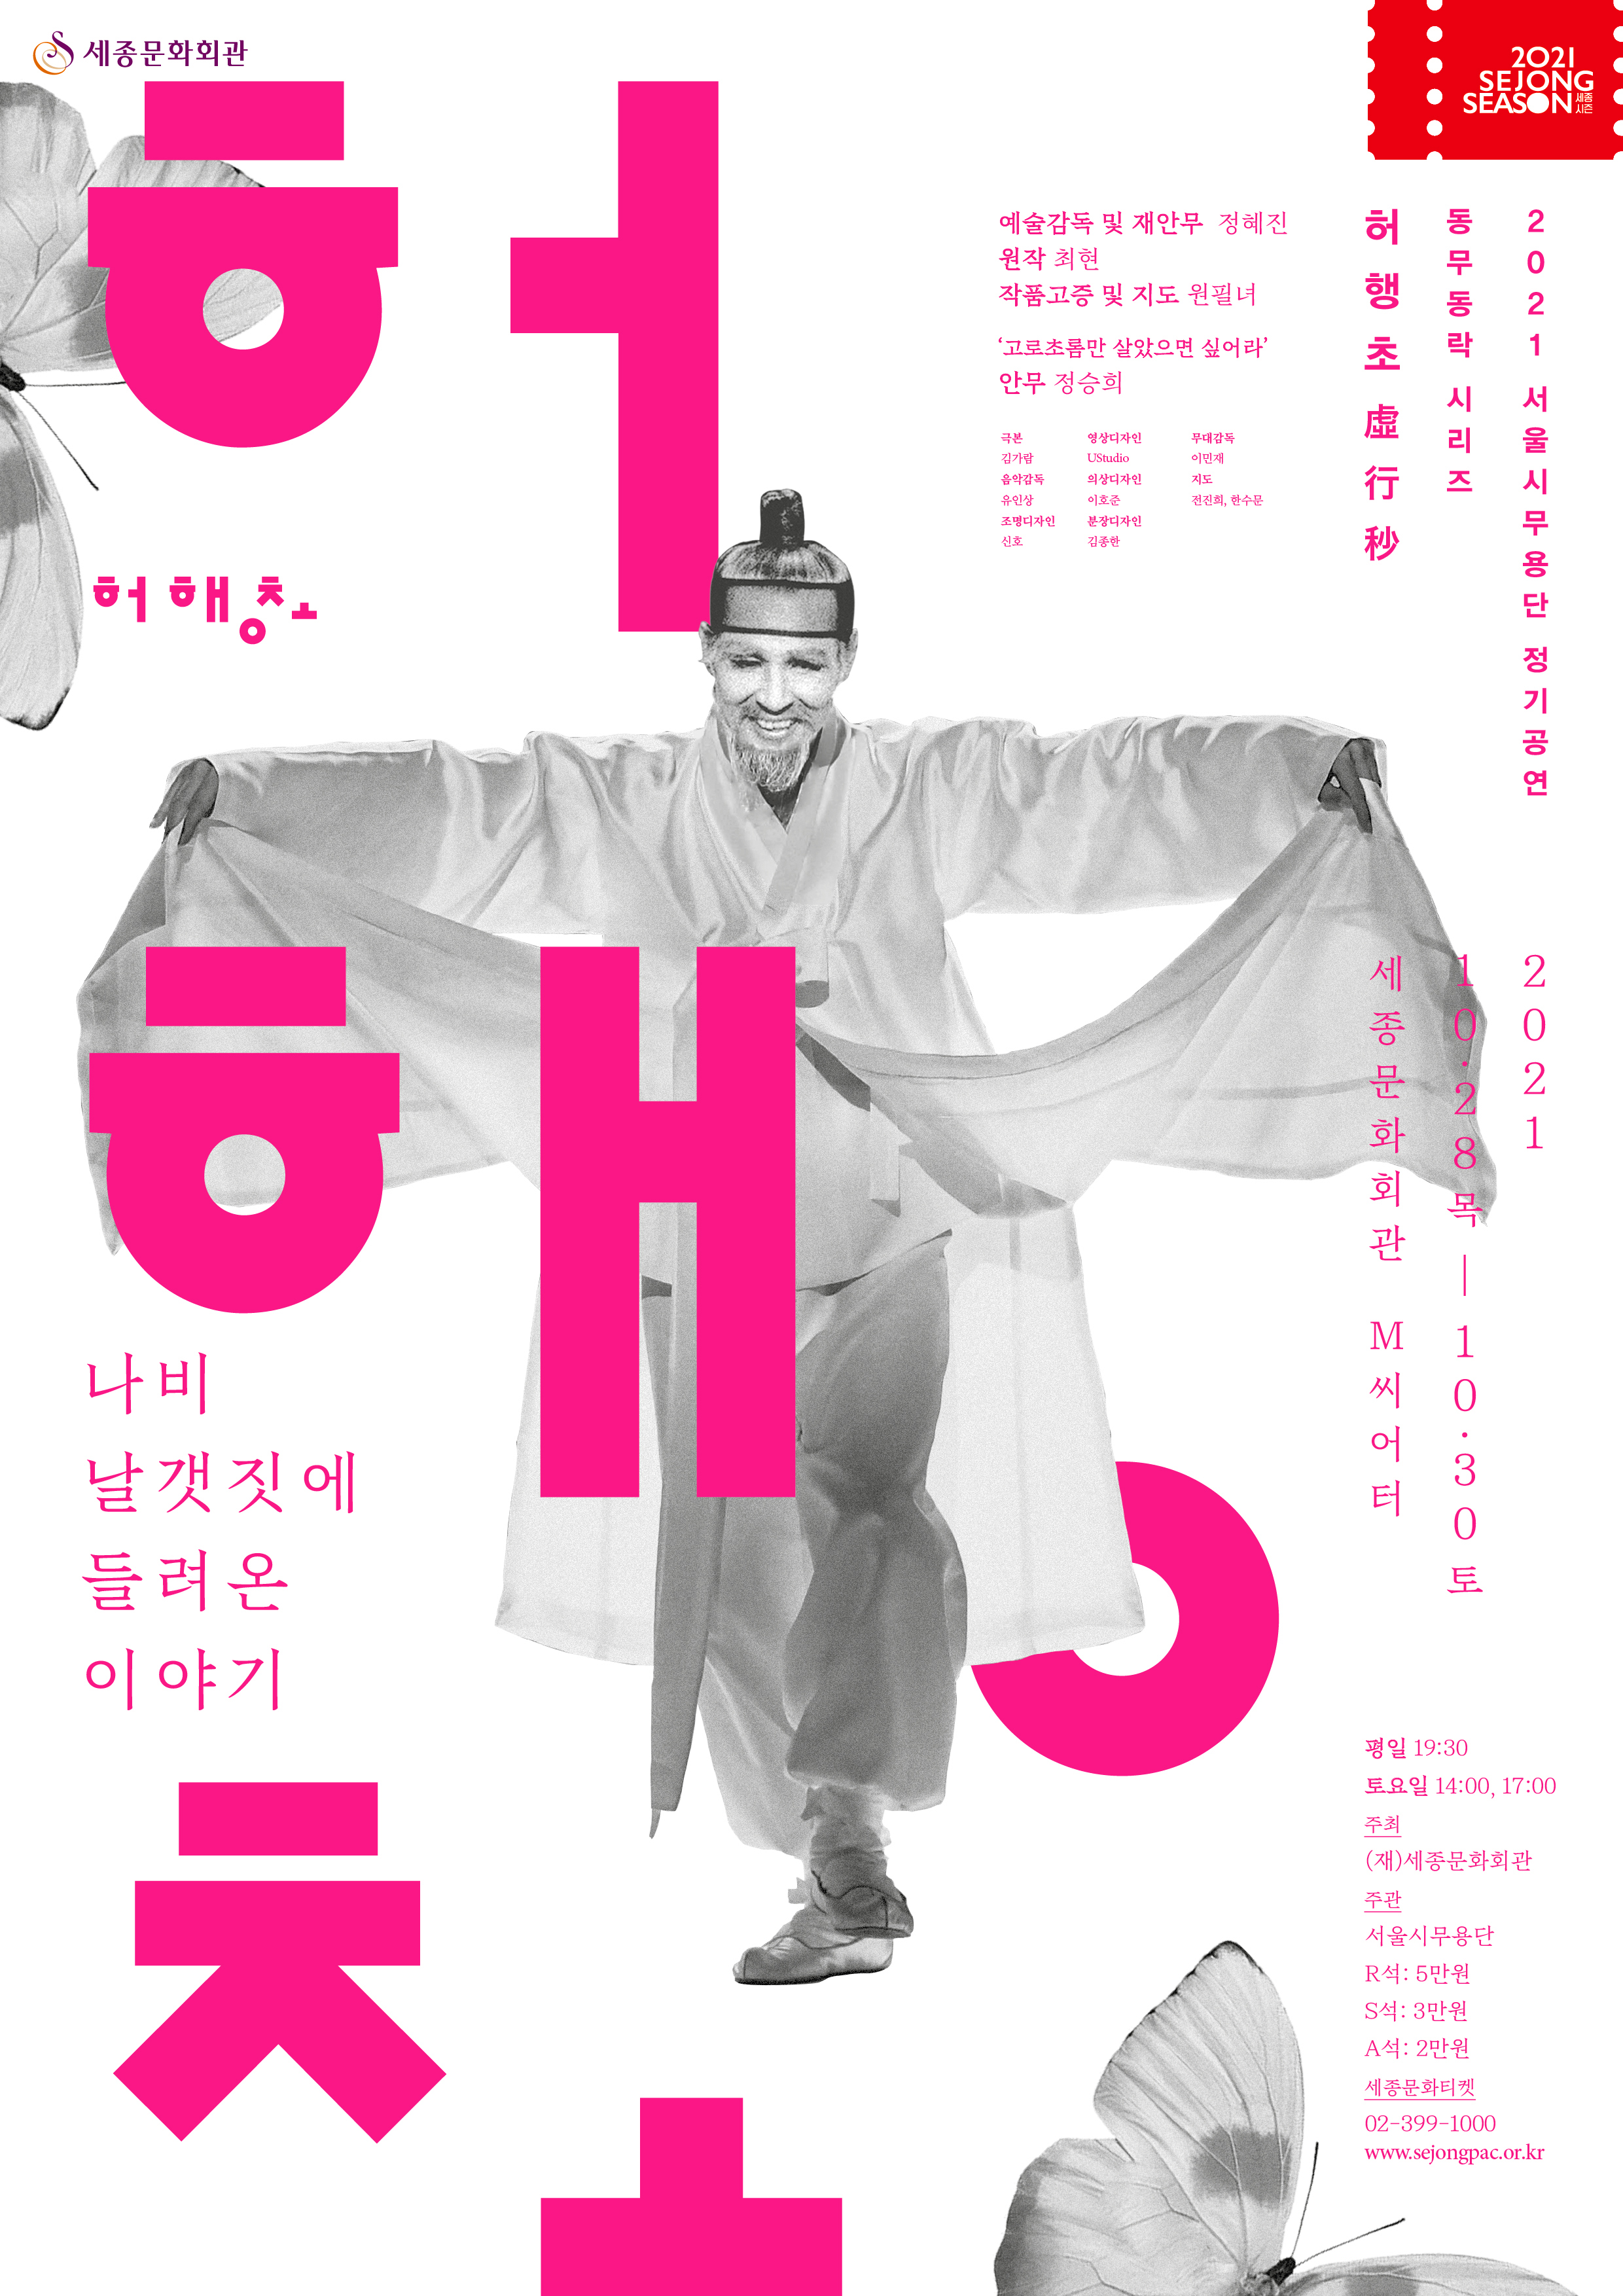 서울시무용단, 신무용의 대가 ‘최현’의 춤사위 <허행초>.. 새롭게 업그레이드